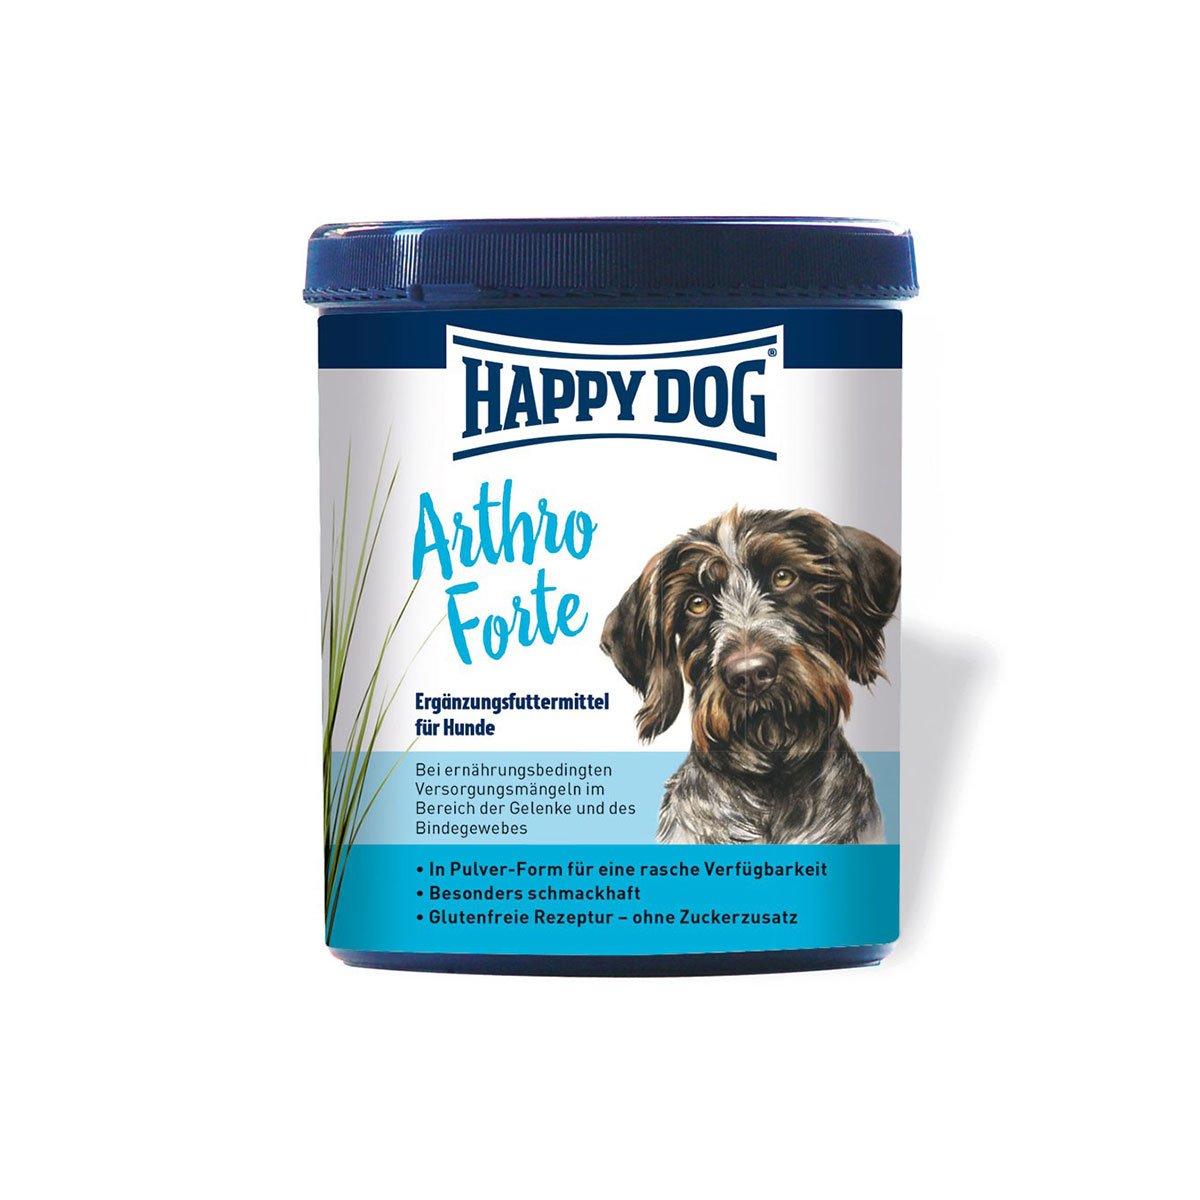 Happy Dog ArthroForte výživové doplňky 700 g